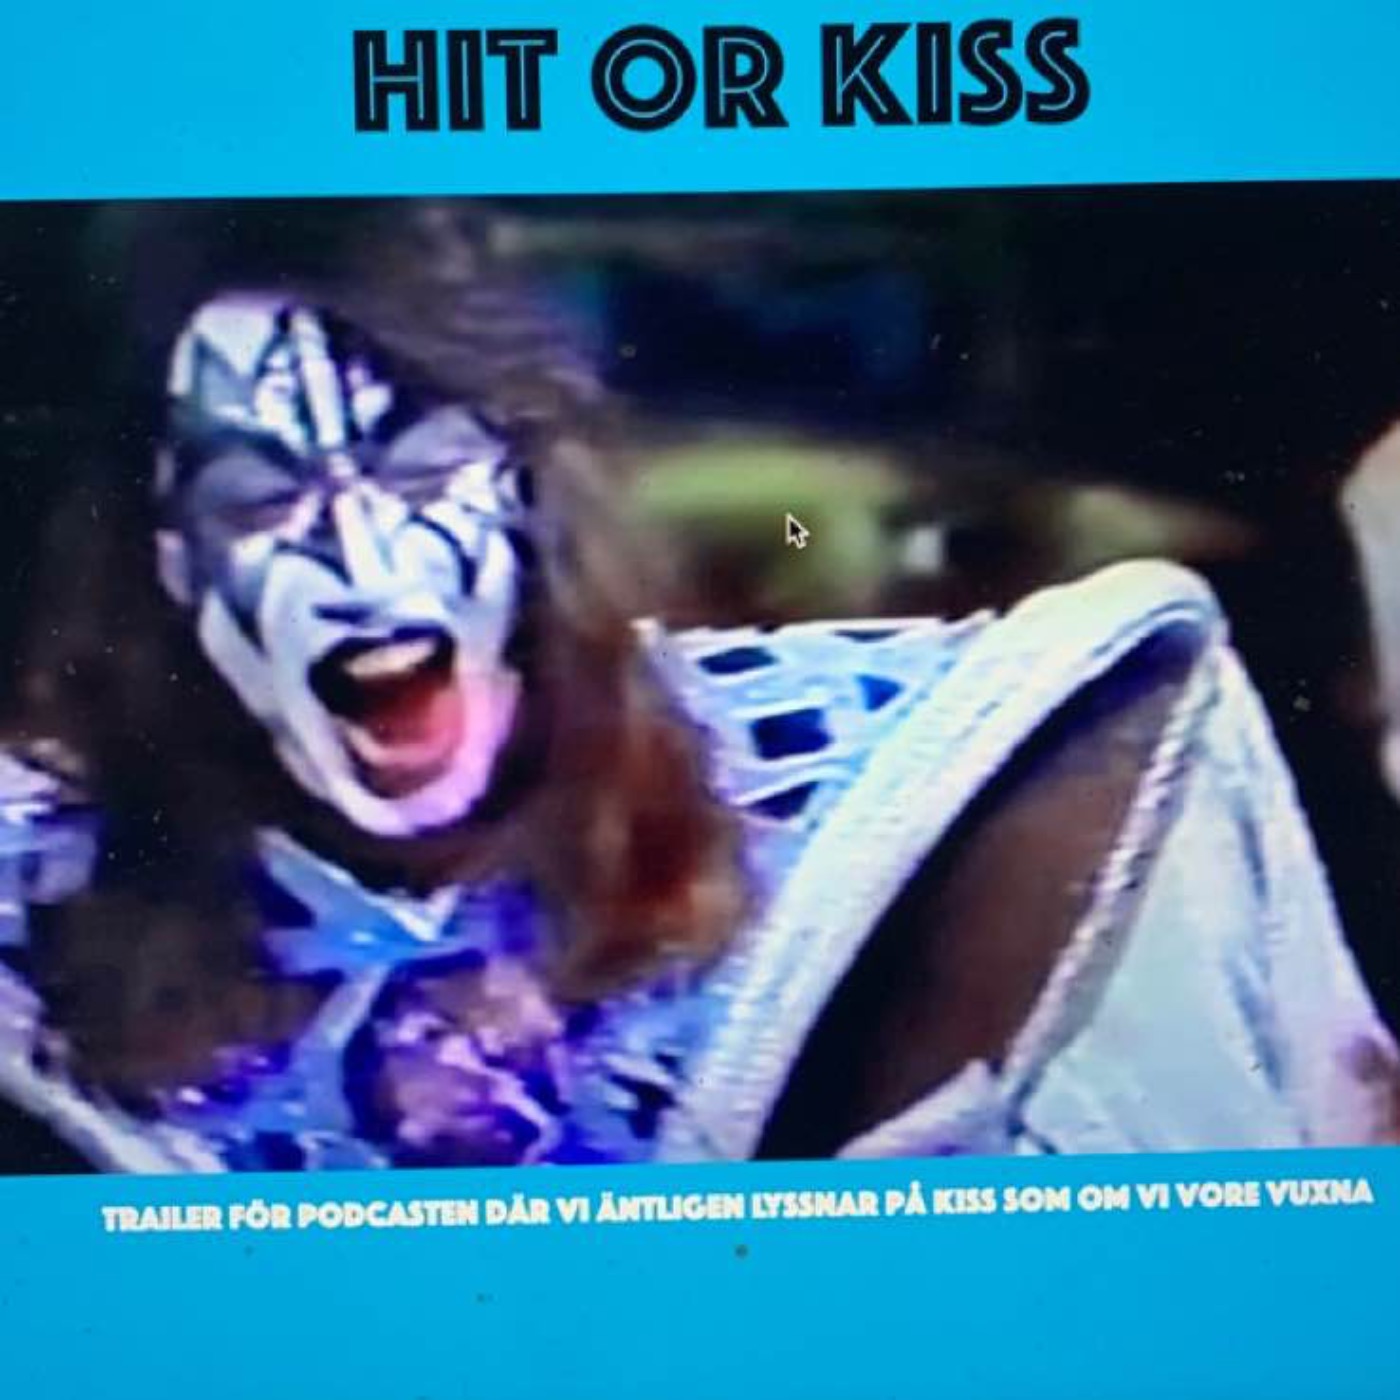 Trailer: Hit or Kiss - Snart lyssnar vi på Kiss som om vi var vuxna